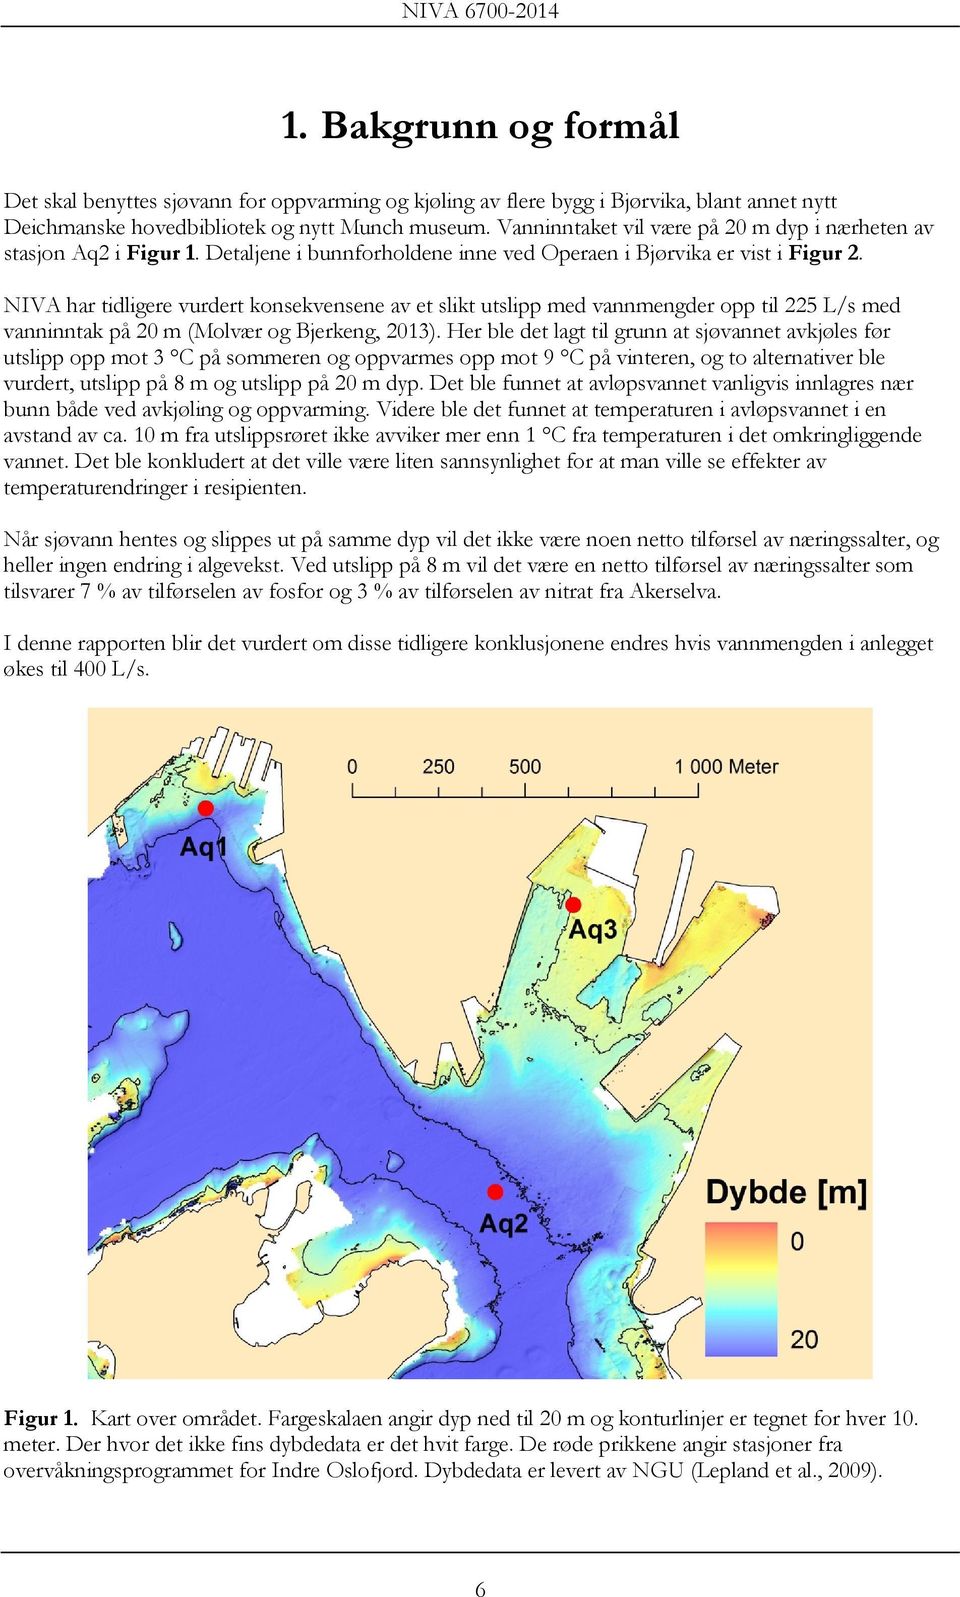 NIVA har tidligere vurdert konsekvensene av et slikt utslipp med vannmengder opp til 225 L/s med vanninntak på 20 m (Molvær og Bjerkeng, 2013).